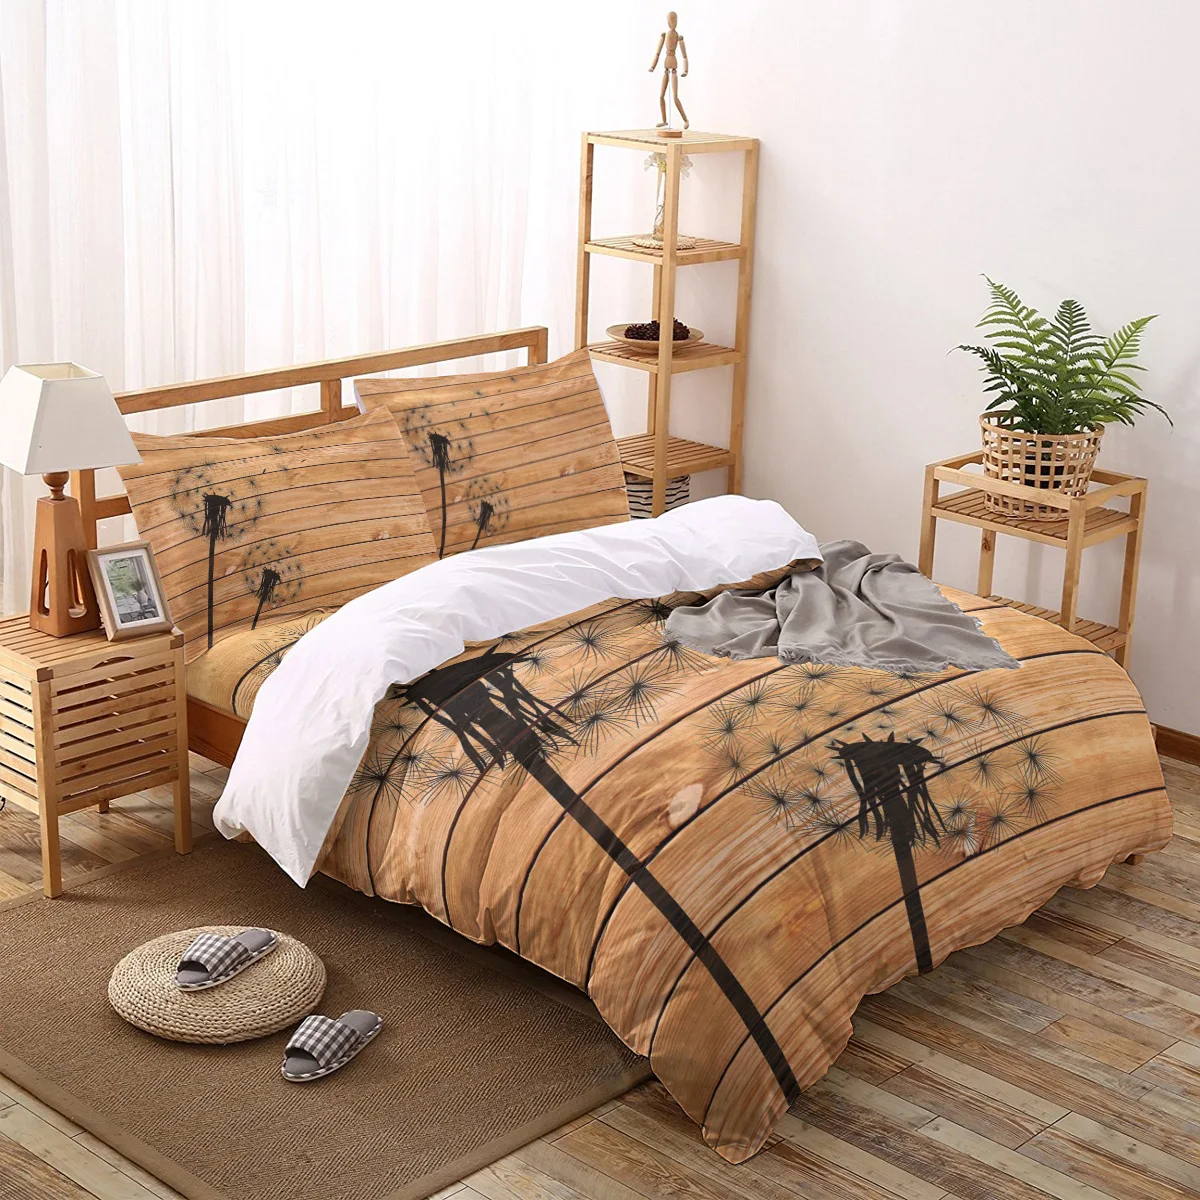 

2/3/4pcs Bedding Set Black Dandelion Wood Grain Duvet Cover Creative Comforter Bed Cover Set Housse De Couette Bedclothes